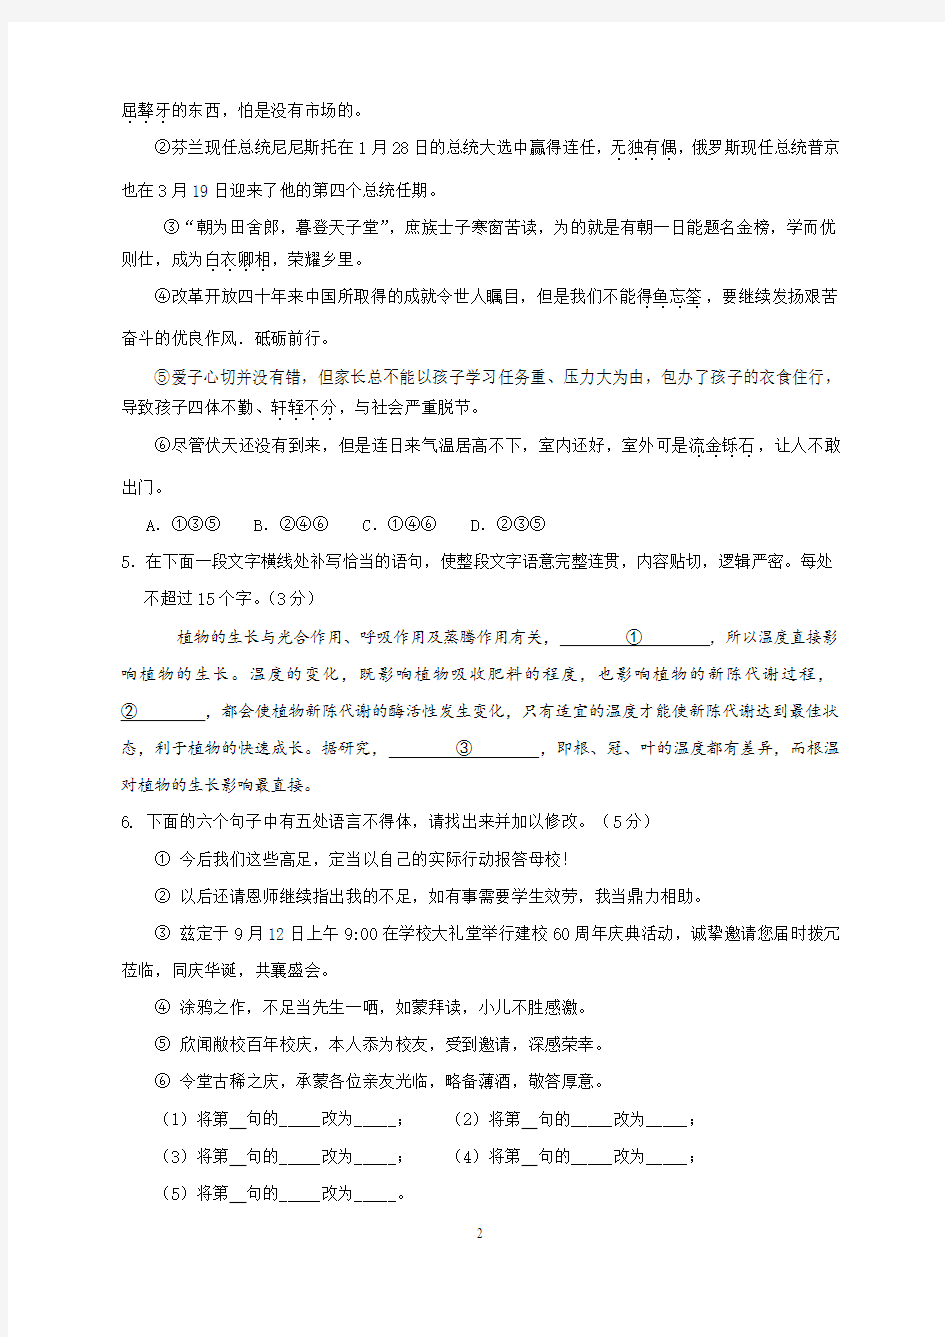 2019年青海省高考语文模拟试题与答案(二)